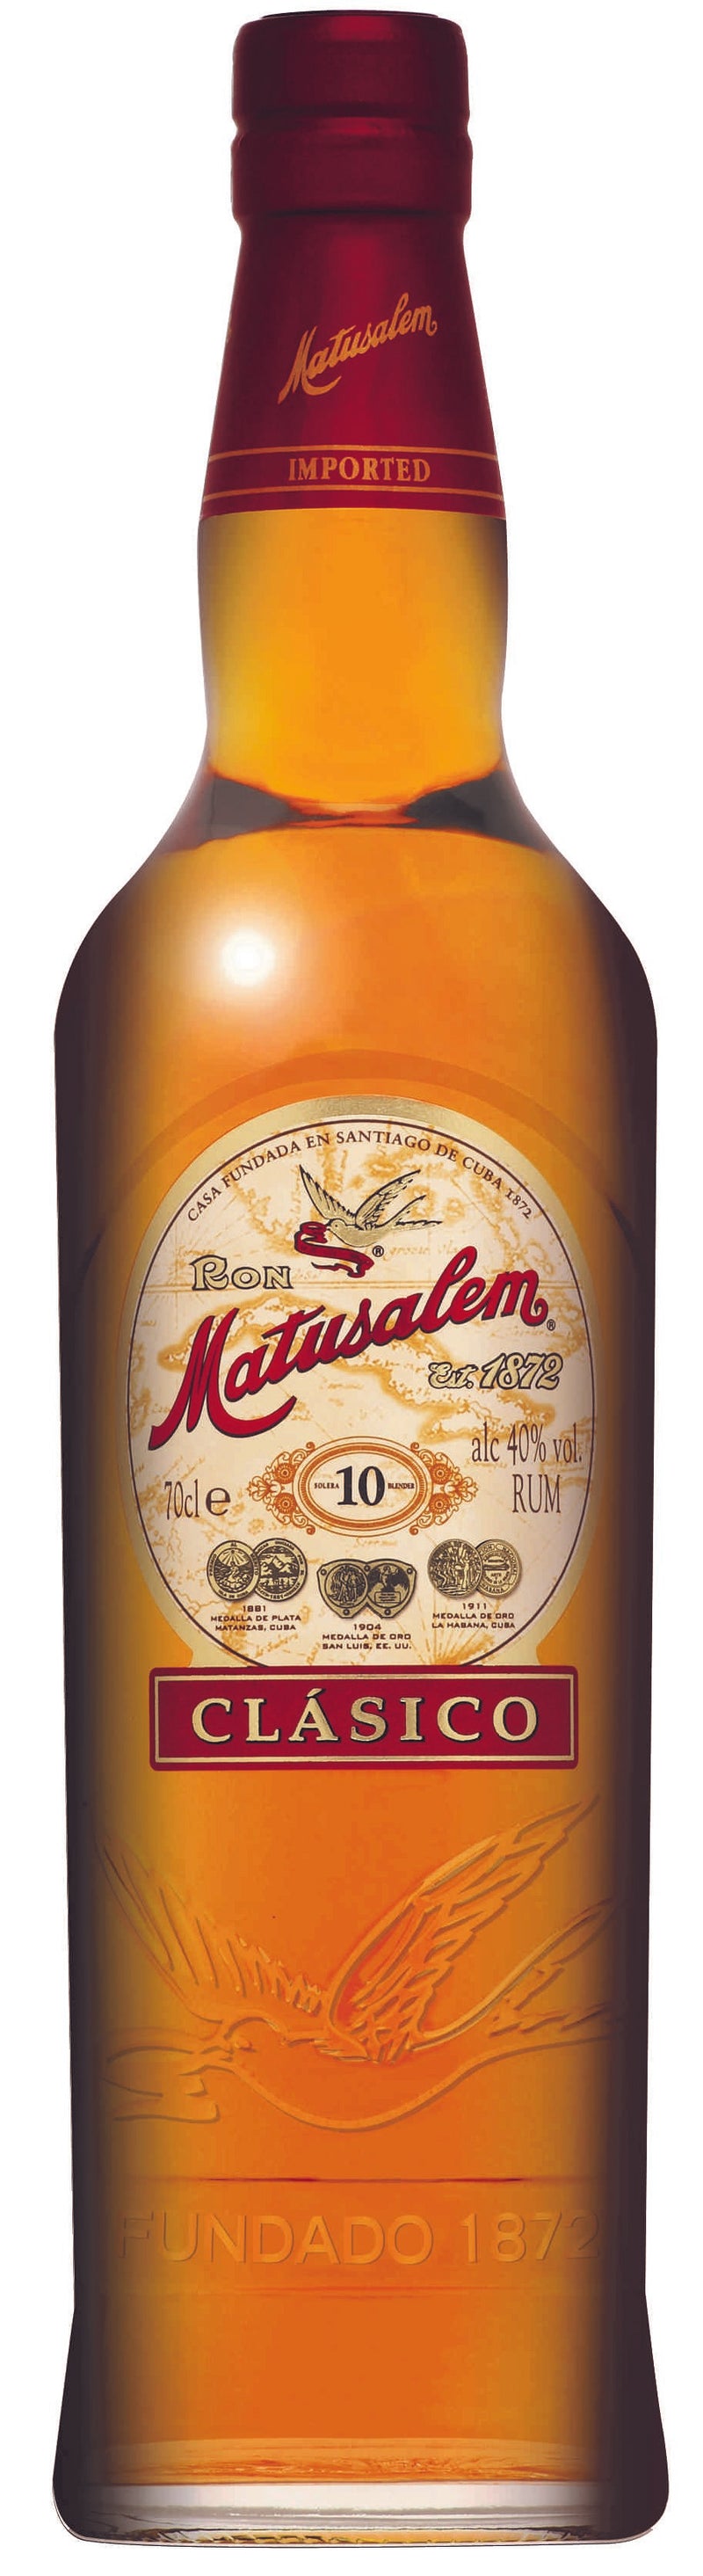 Ron Matusalem Clasico Rum 70cl